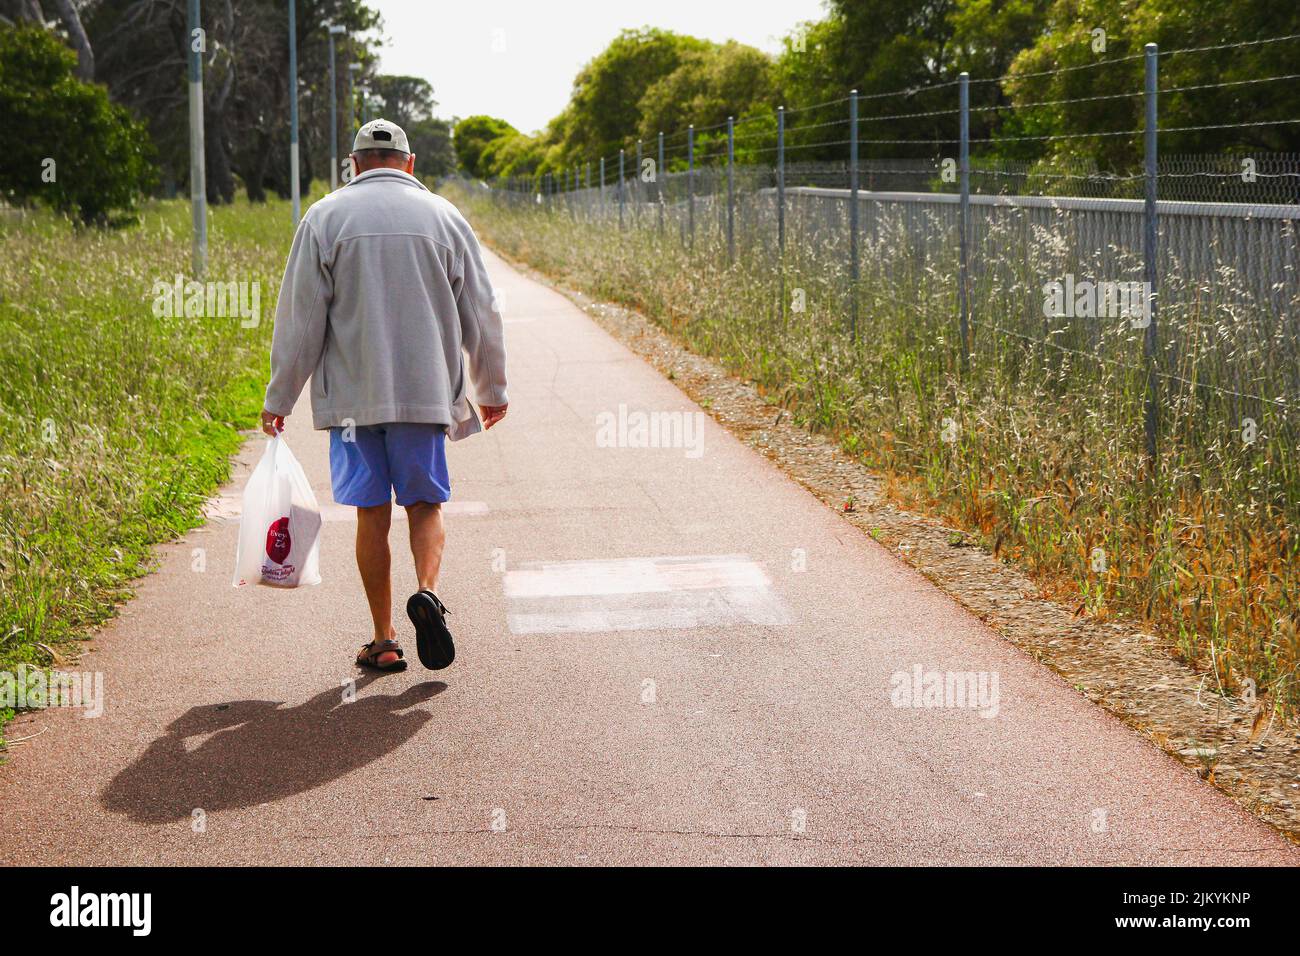 Un homme marchant sur un trottoir pendant chaque tâche de la vie quotidienne Banque D'Images